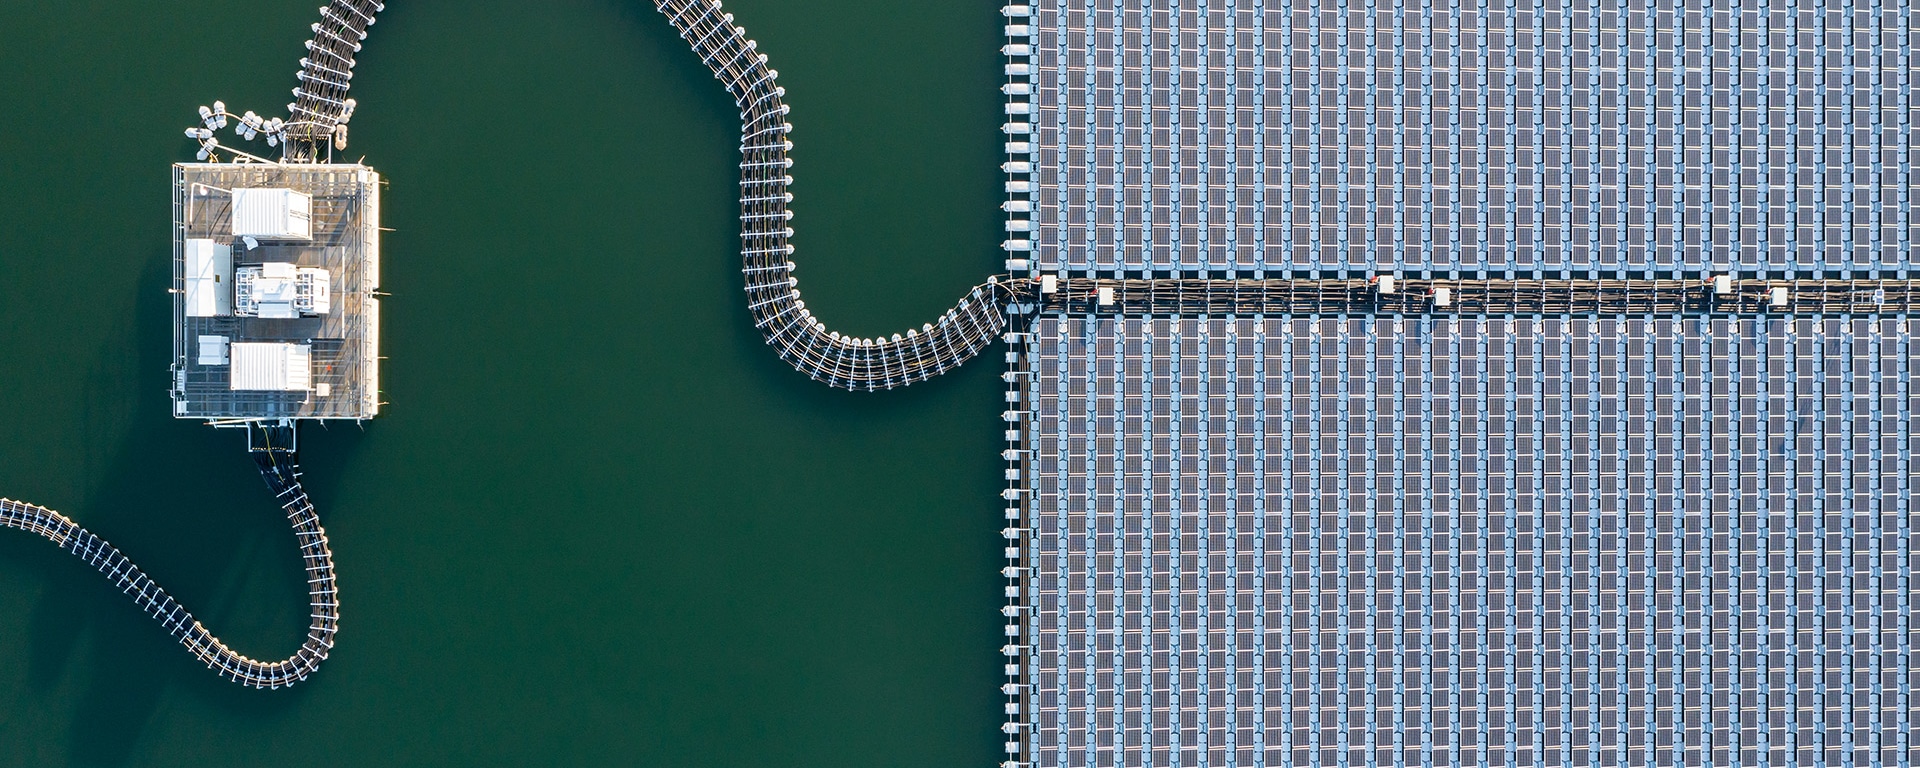 Vista aerea di un'isola artificiale - immagine simbolica per colmare il divario verso i dividendi.